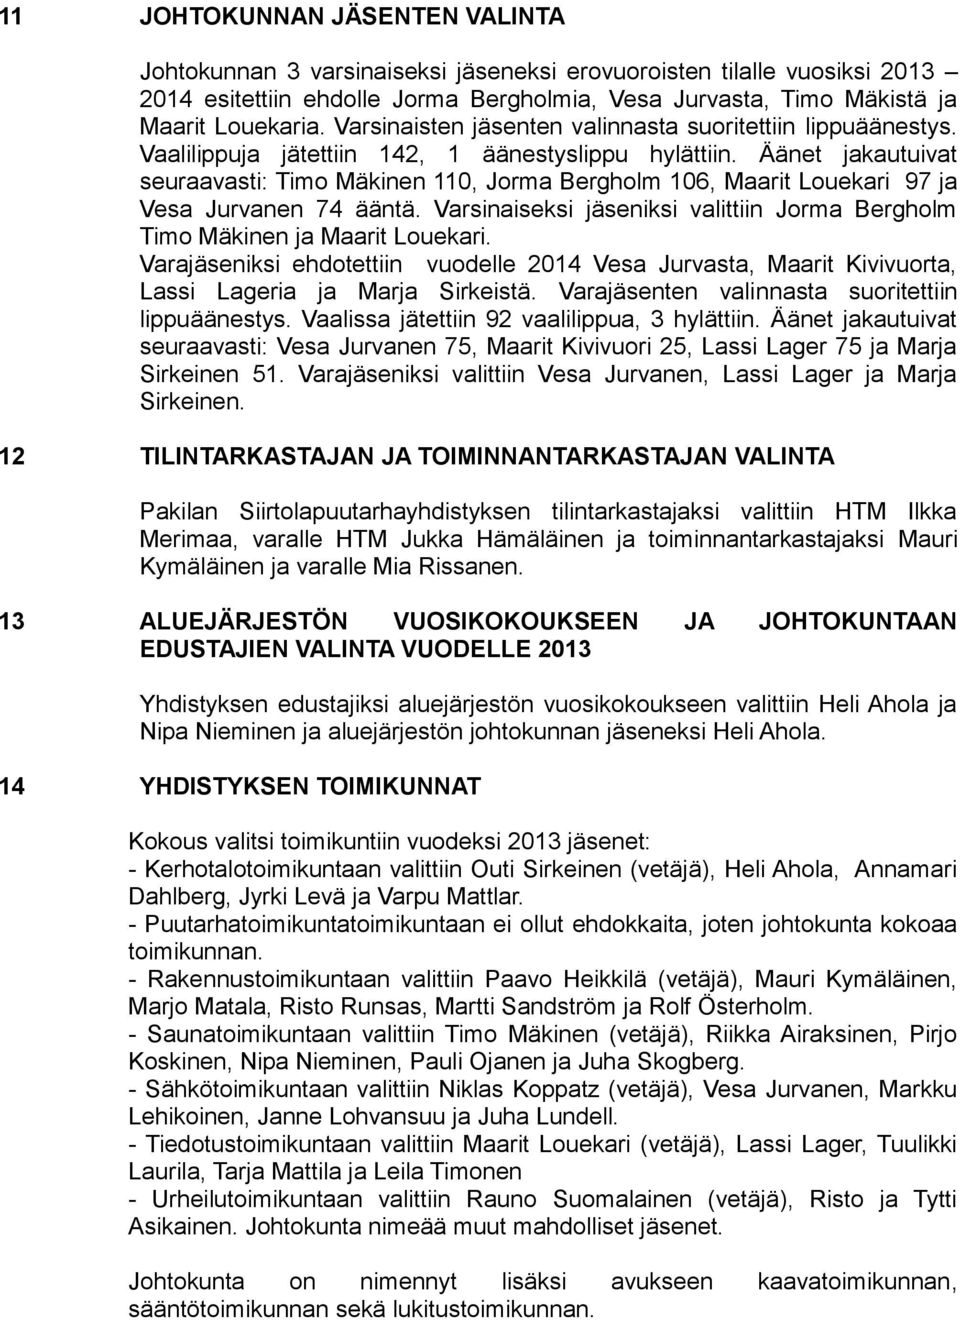 Äänet jakautuivat seuraavasti: Timo Mäkinen 110, Jorma Bergholm 106, Maarit Louekari 97 ja Vesa Jurvanen 74 ääntä. Varsinaiseksi jäseniksi valittiin Jorma Bergholm Timo Mäkinen ja Maarit Louekari.